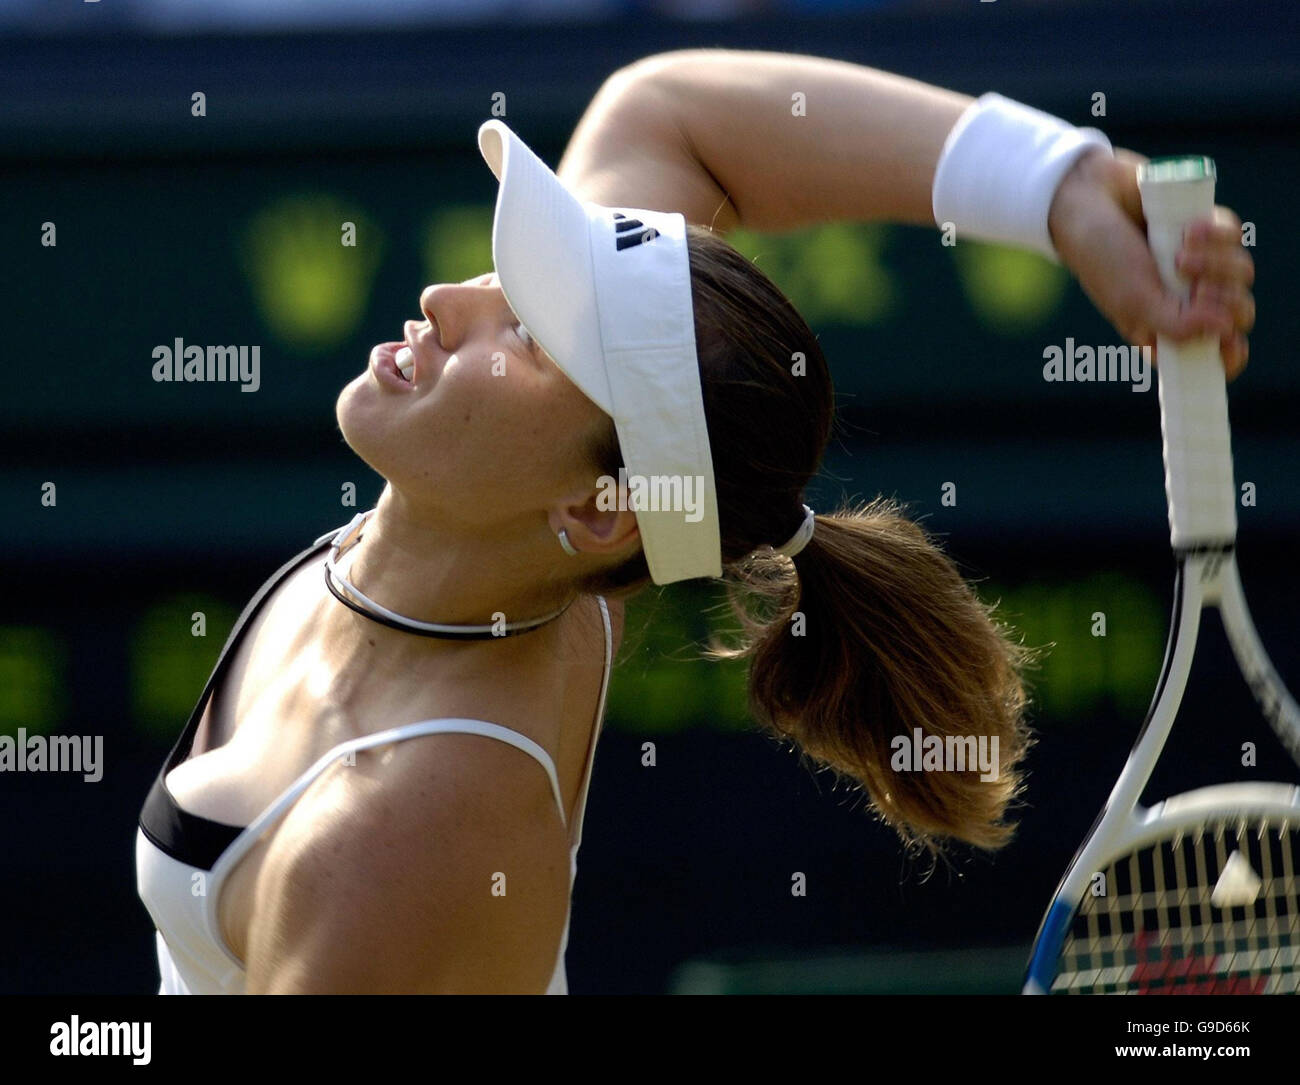 Martina Hingis della Svizzera in azione contro ai Sugiyama del Giappone durante il terzo round del campionato di tennis al prato dell'Inghilterra a Wimbledon. Foto Stock